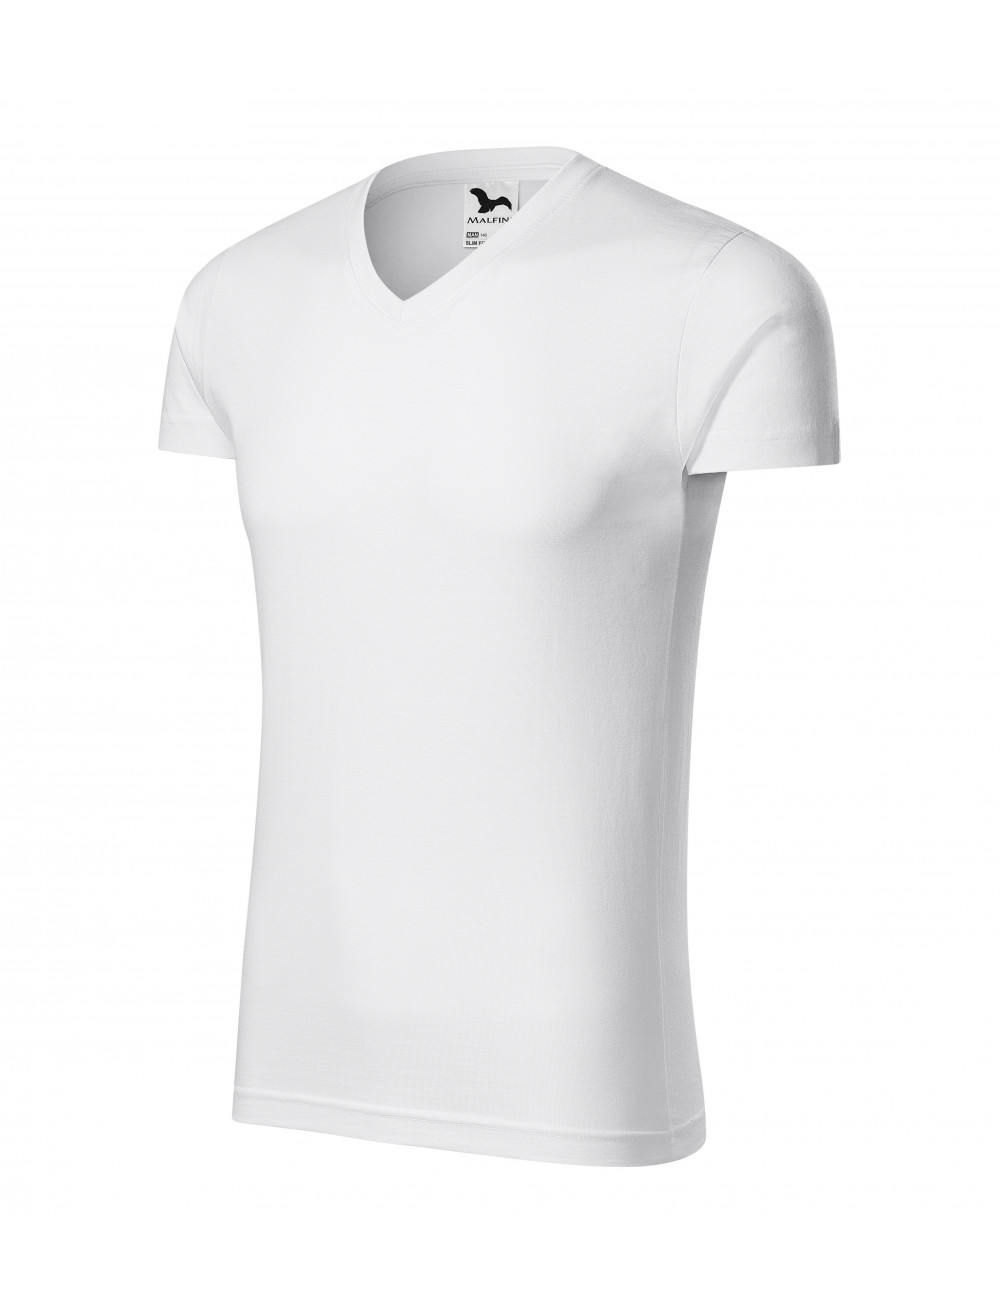 Koszulka męska slim fit v-neck 146 biały Adler Malfini